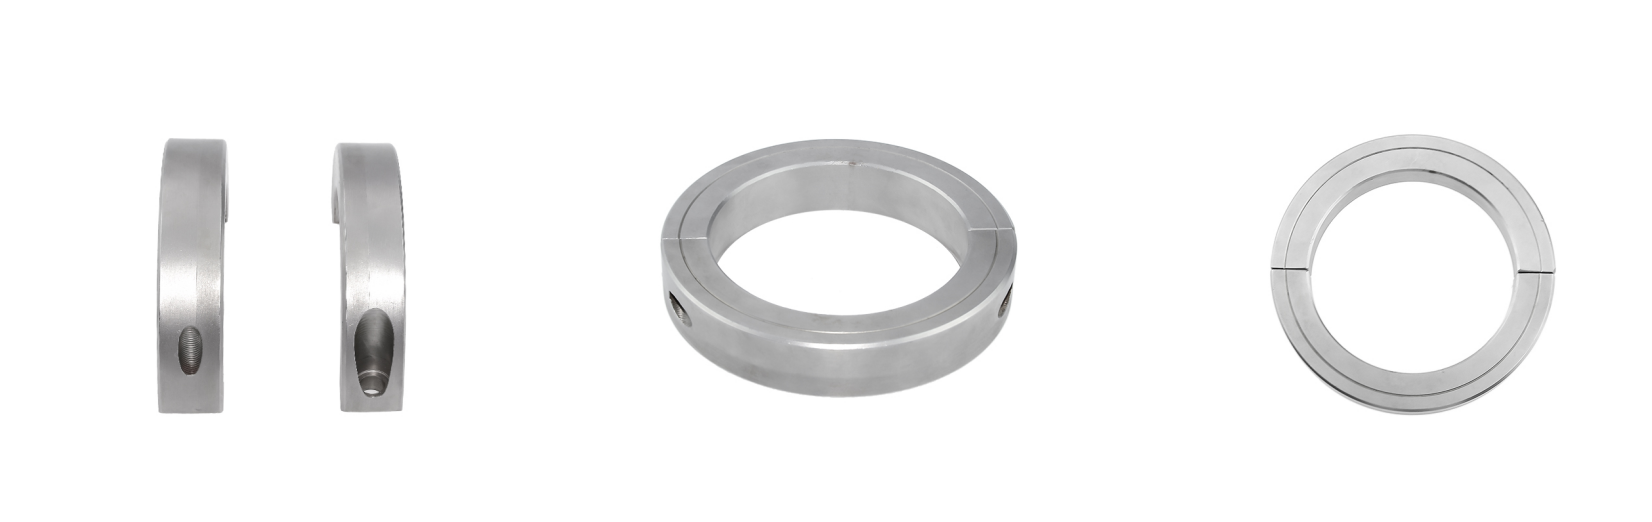 Bearing limit retaining ring mechanical thrust ring shaft snap Shaft Collars